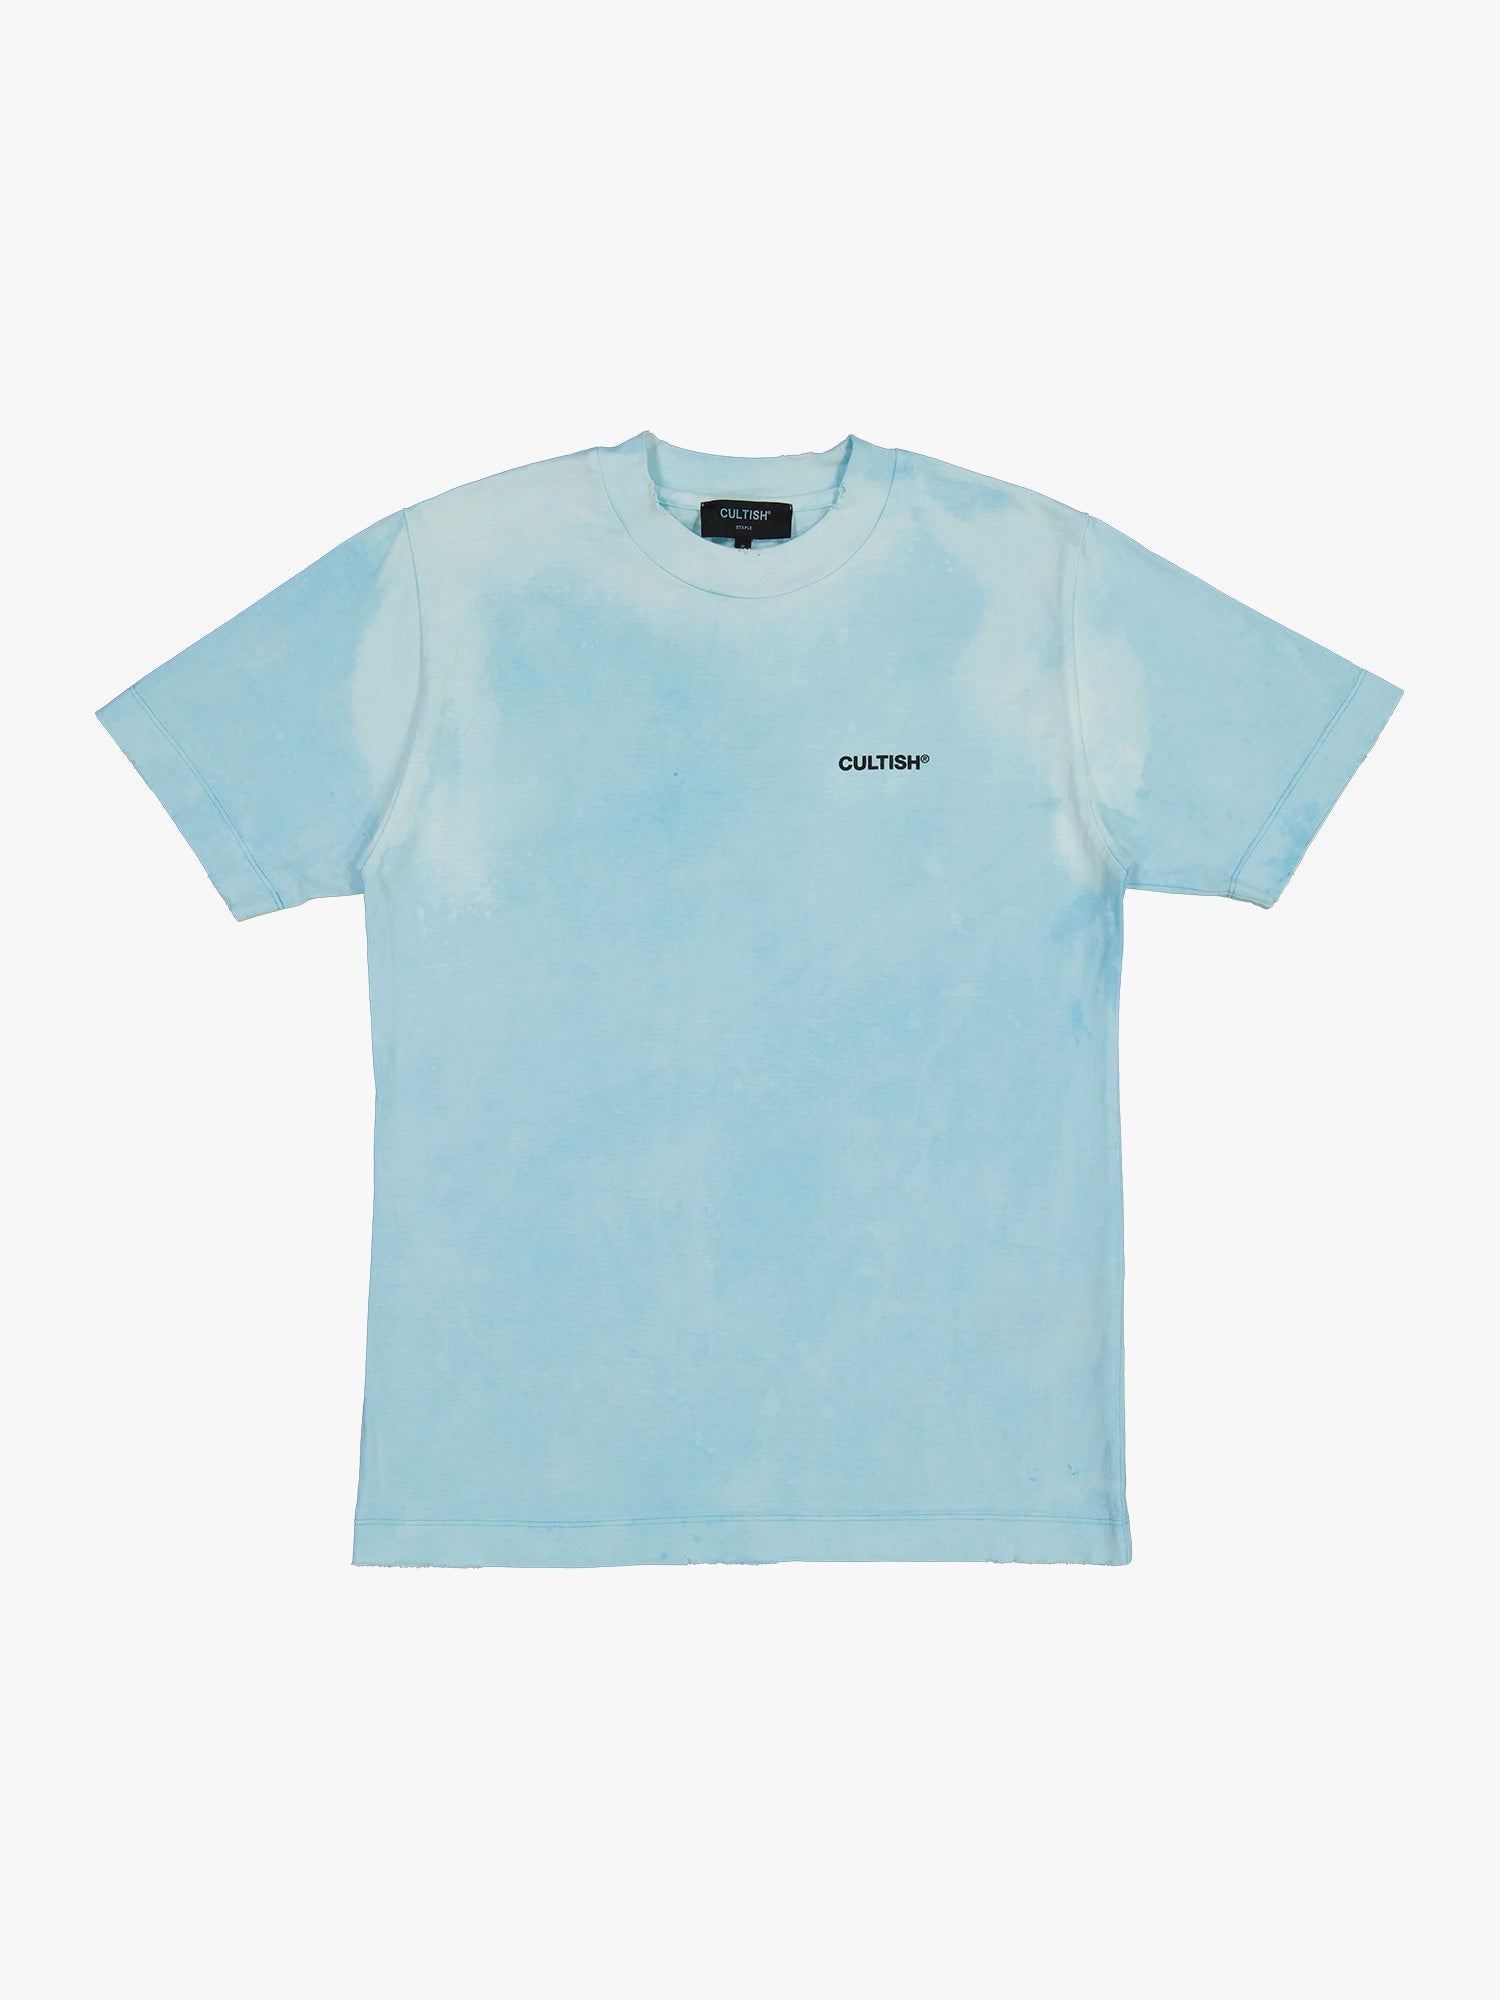 ⓔ Staple T-Shirt